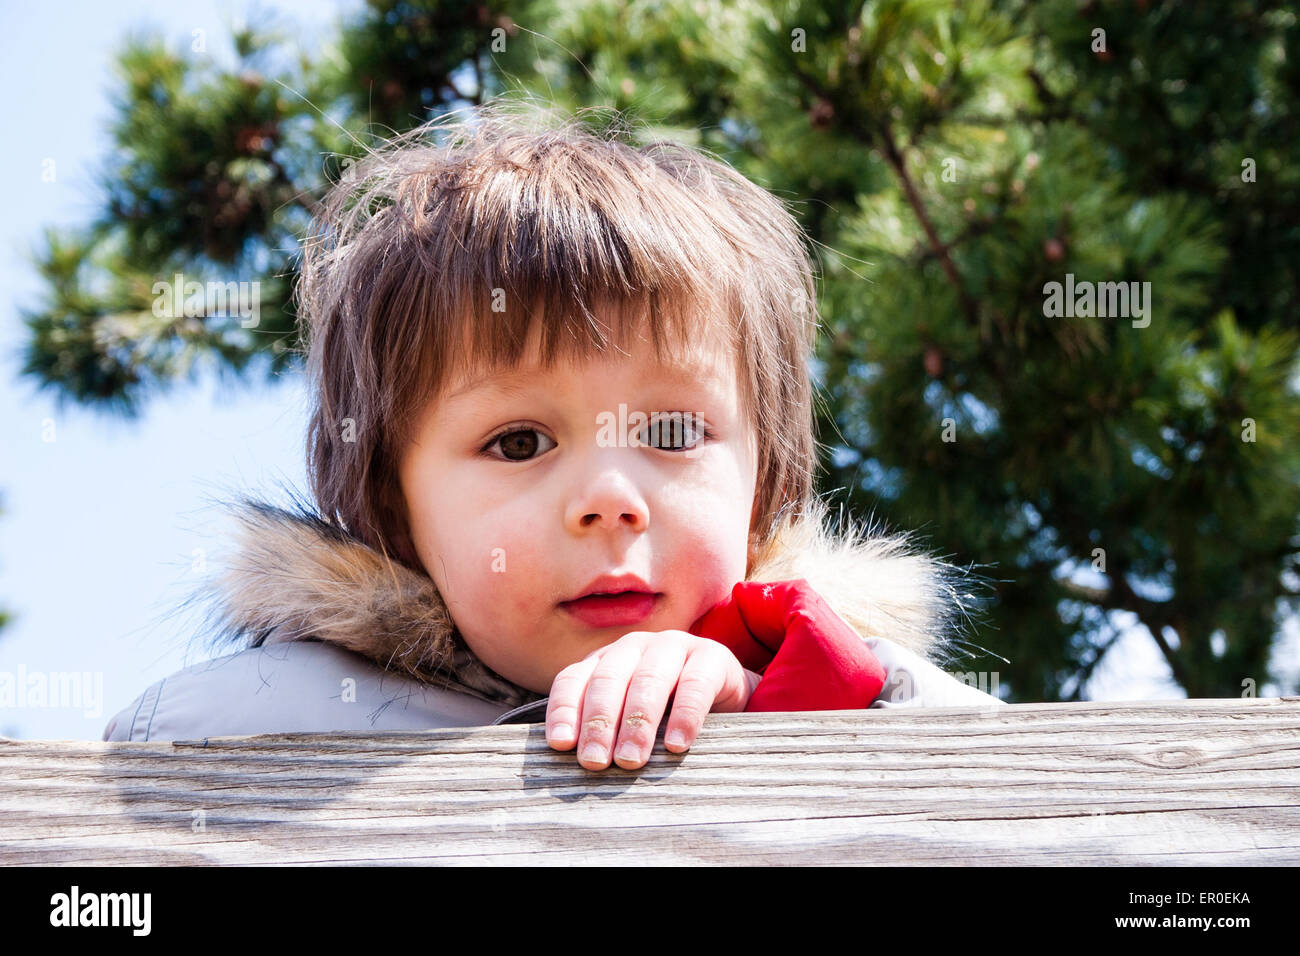 Une photo de tête et d'épaule d'un jeune enfant de 3-4 ans, avec des joues rouges, portant un manteau d'hiver avec un col en fourrure, regarde une clôture en bois au spectateur. Banque D'Images